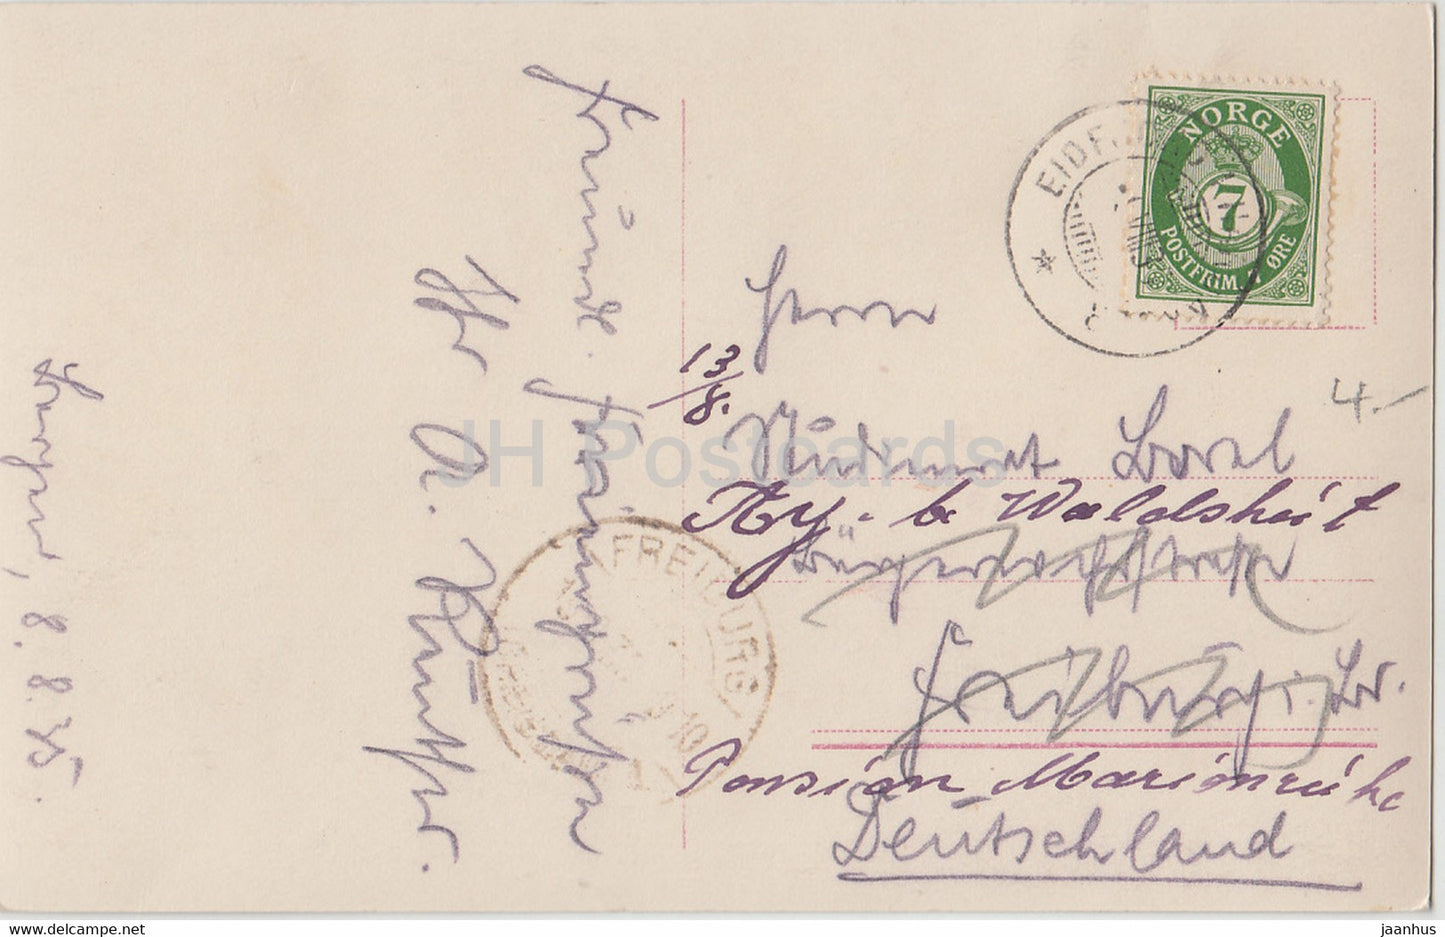 Bergen - Interior Haakonshallen - old postcard - 1935 - Norway - used